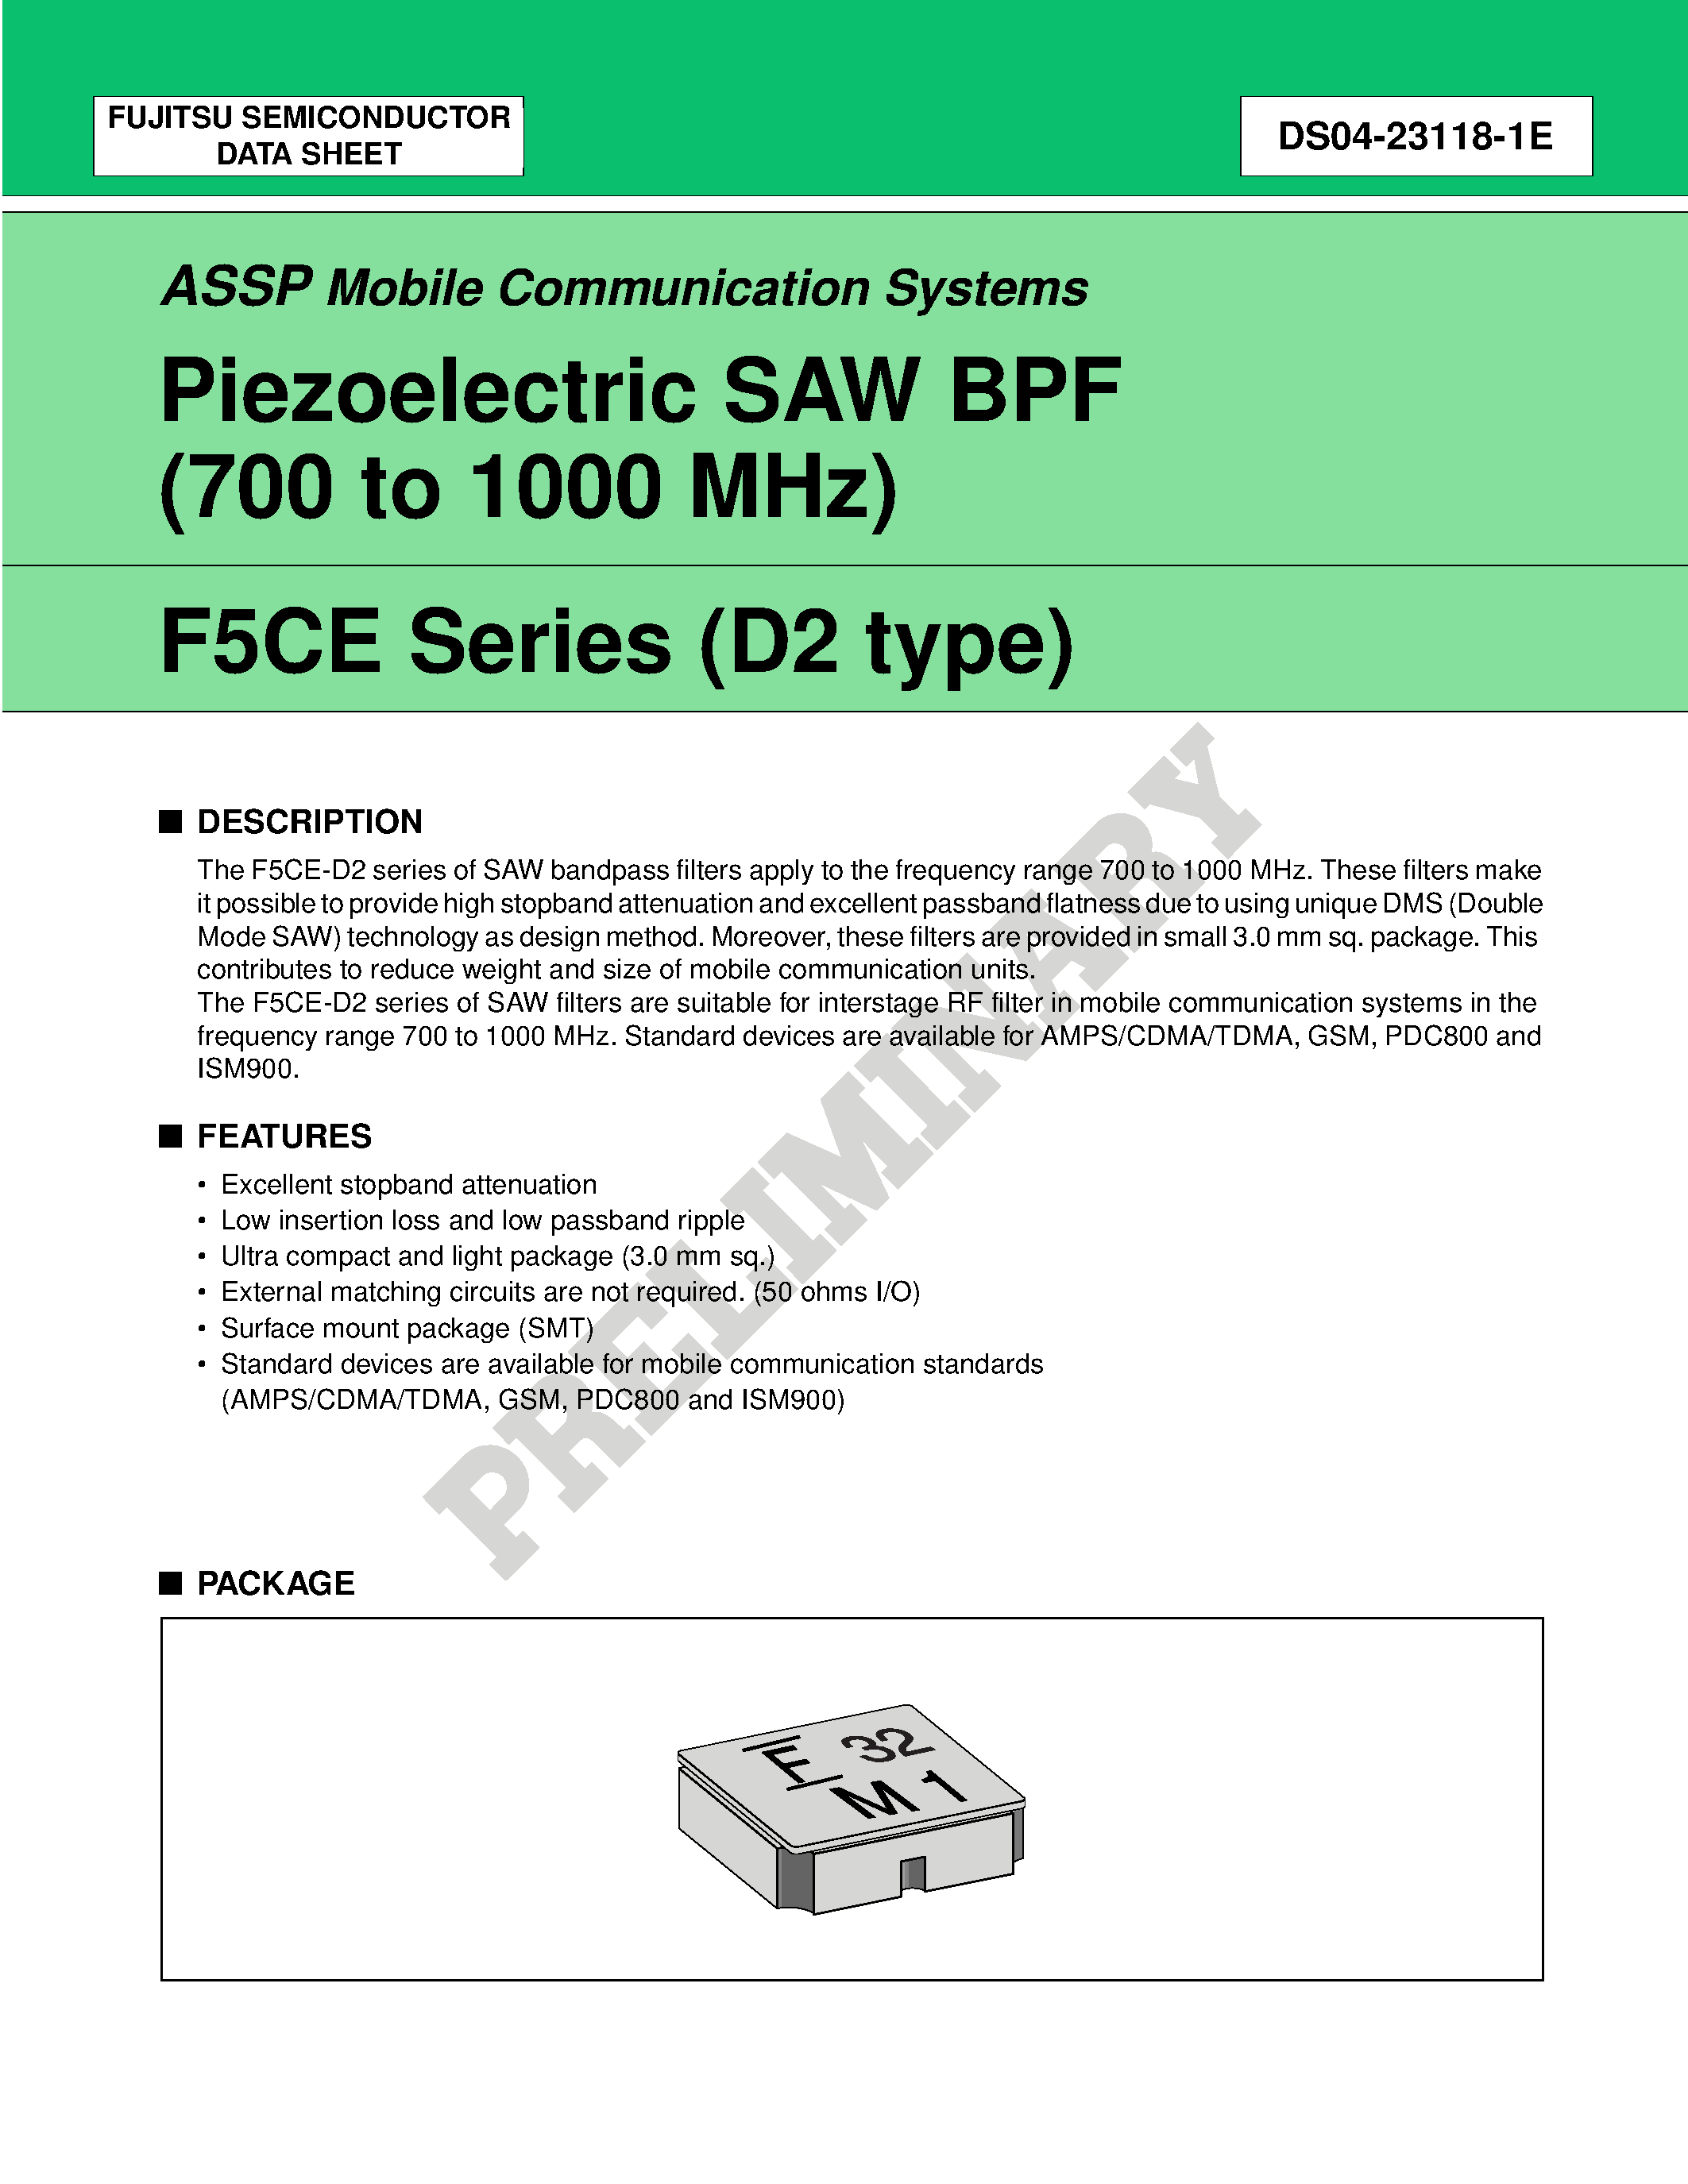 Datasheet FAR-F5CE-947M50-K233-U - Piezoelectric SAW BPF (700 to 1700 MHz) page 1